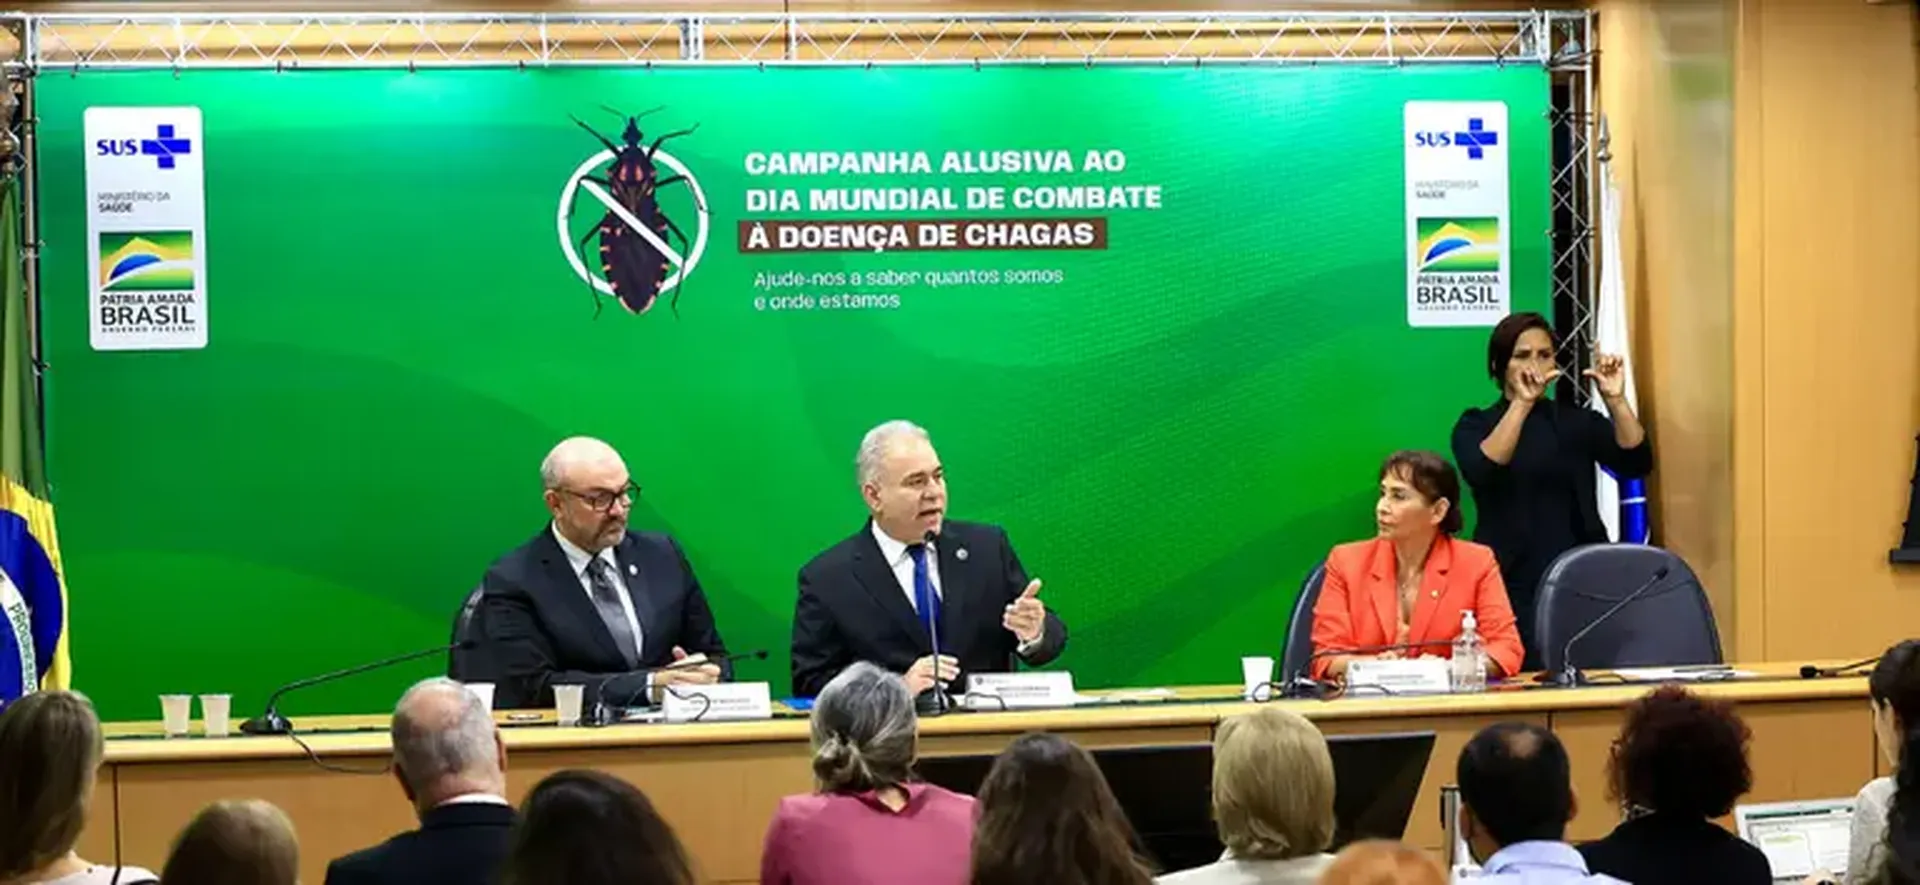 Ministério da Saúde lança campanha para combater a transmissão da doença de Chagas no Brasil